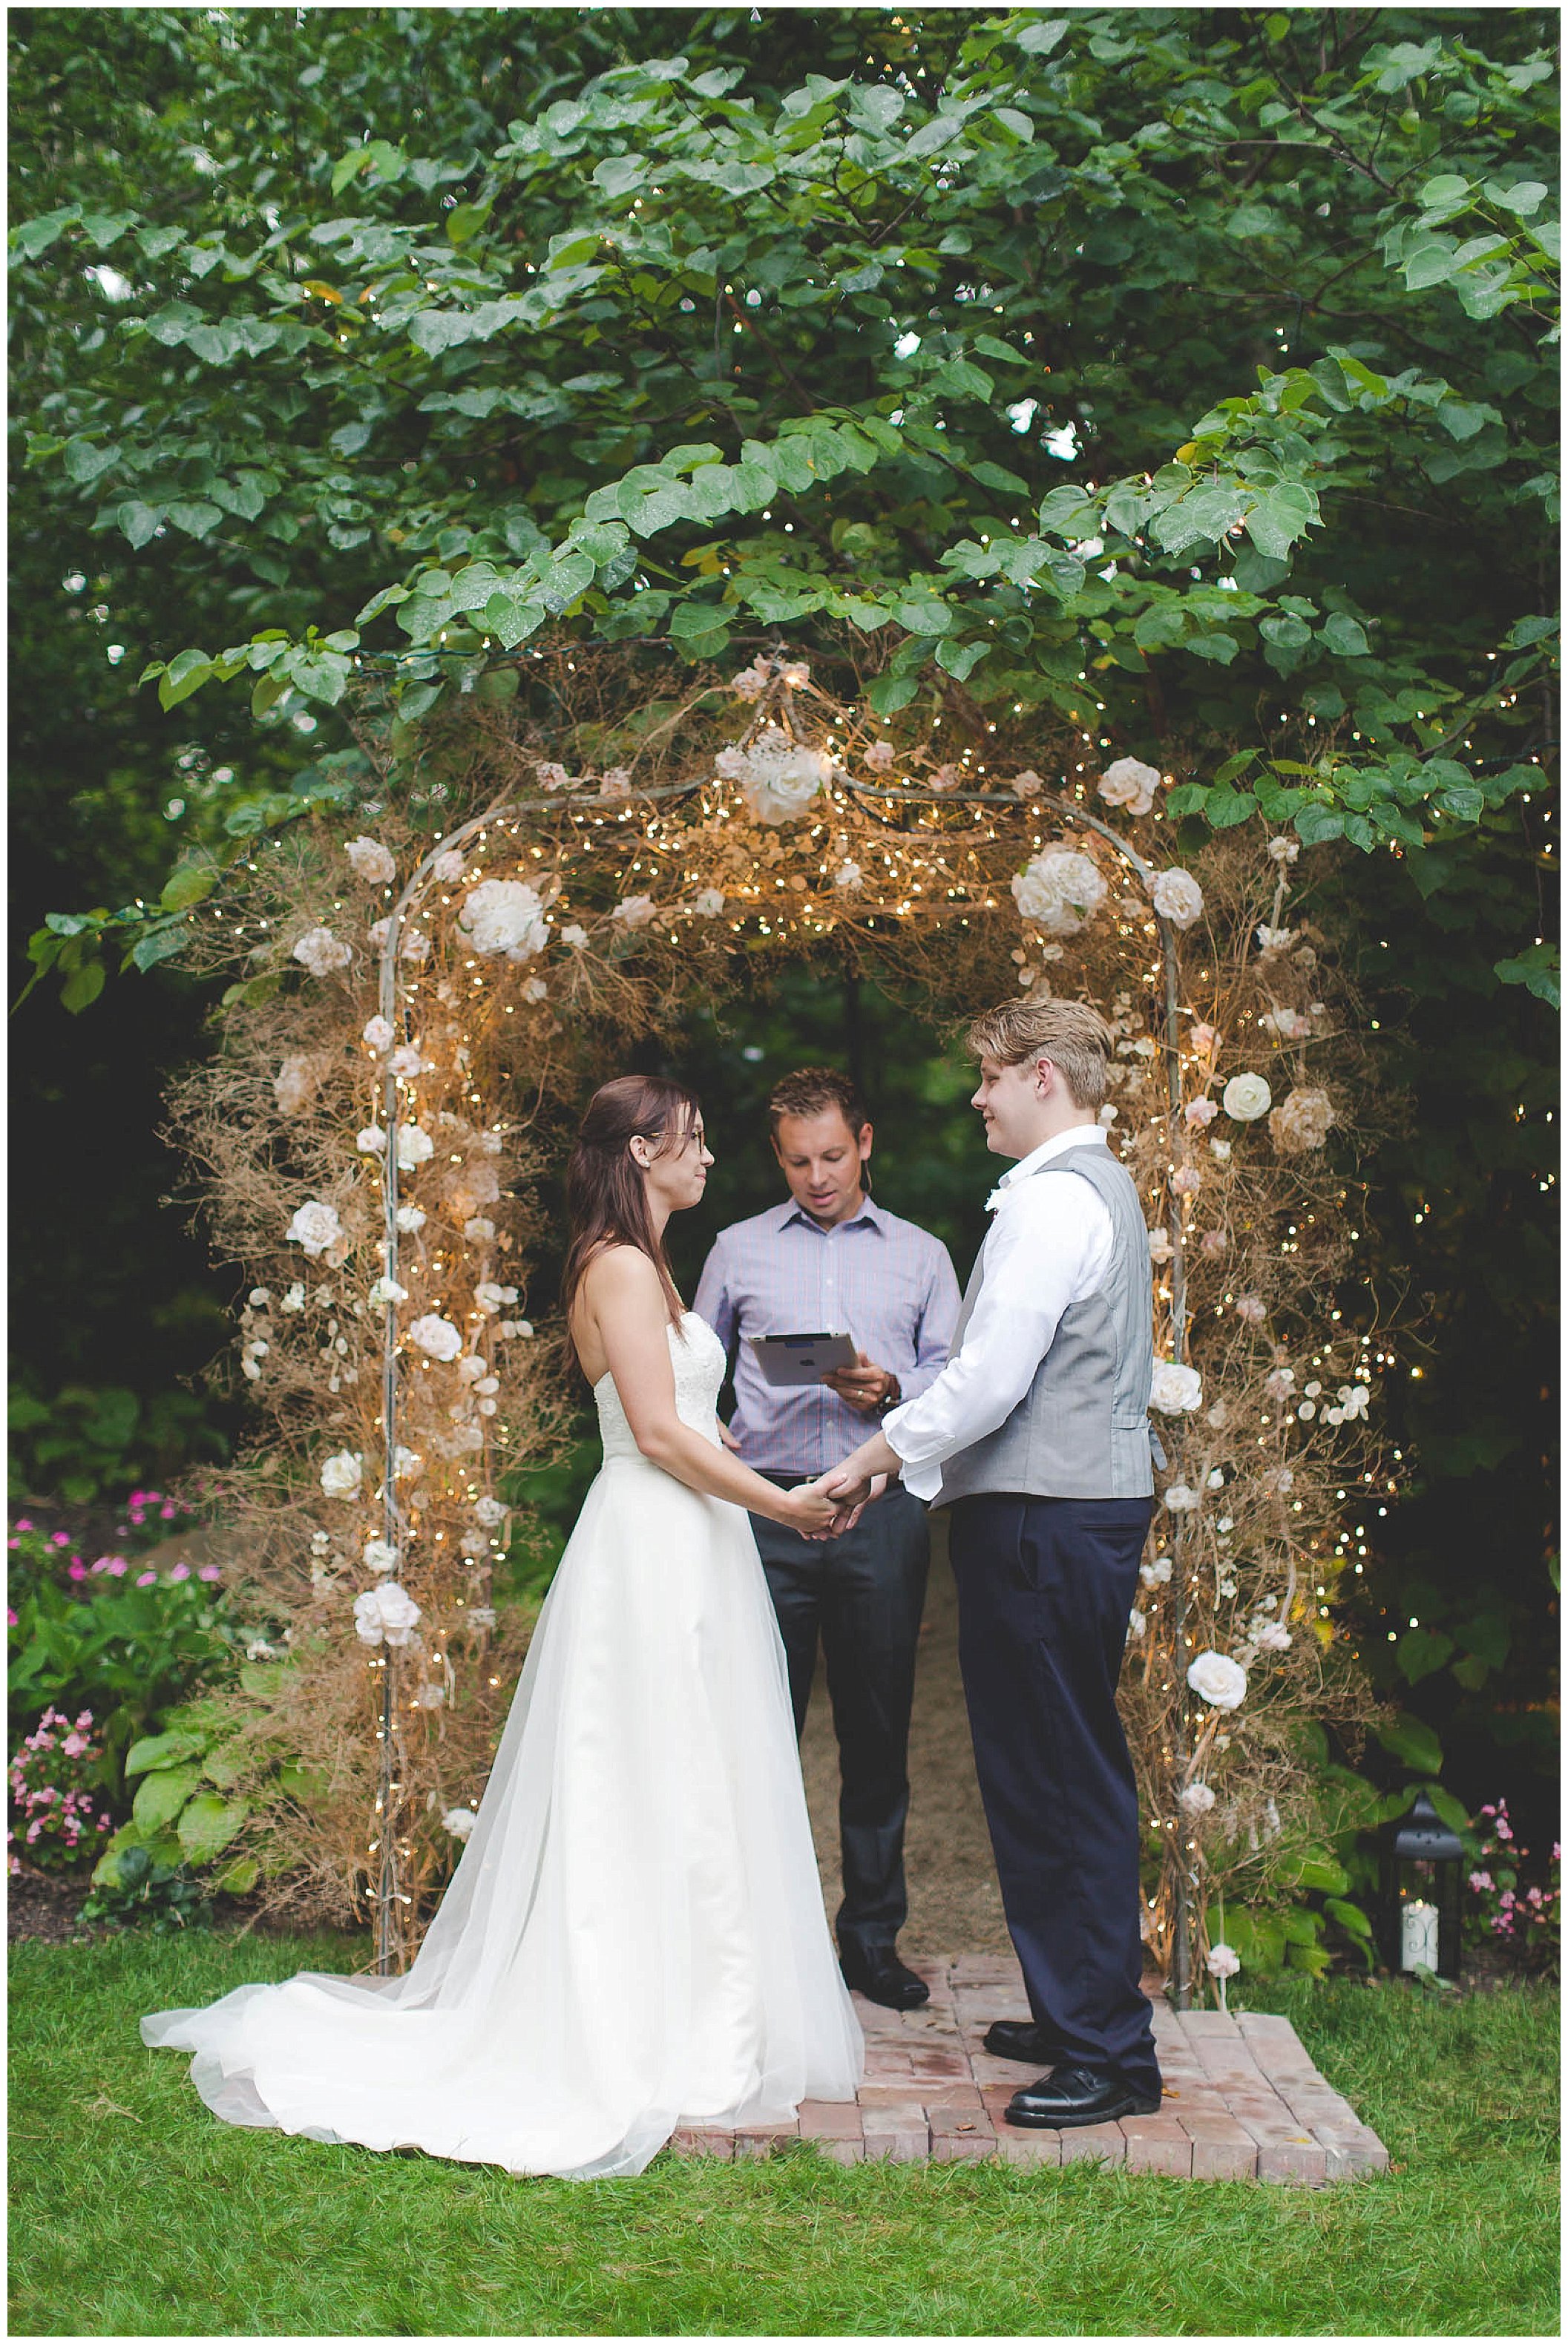 Stunning backyard wedding with twinkly lights, Fort Wayne Indiana Wedding Photographer_0015.jpg